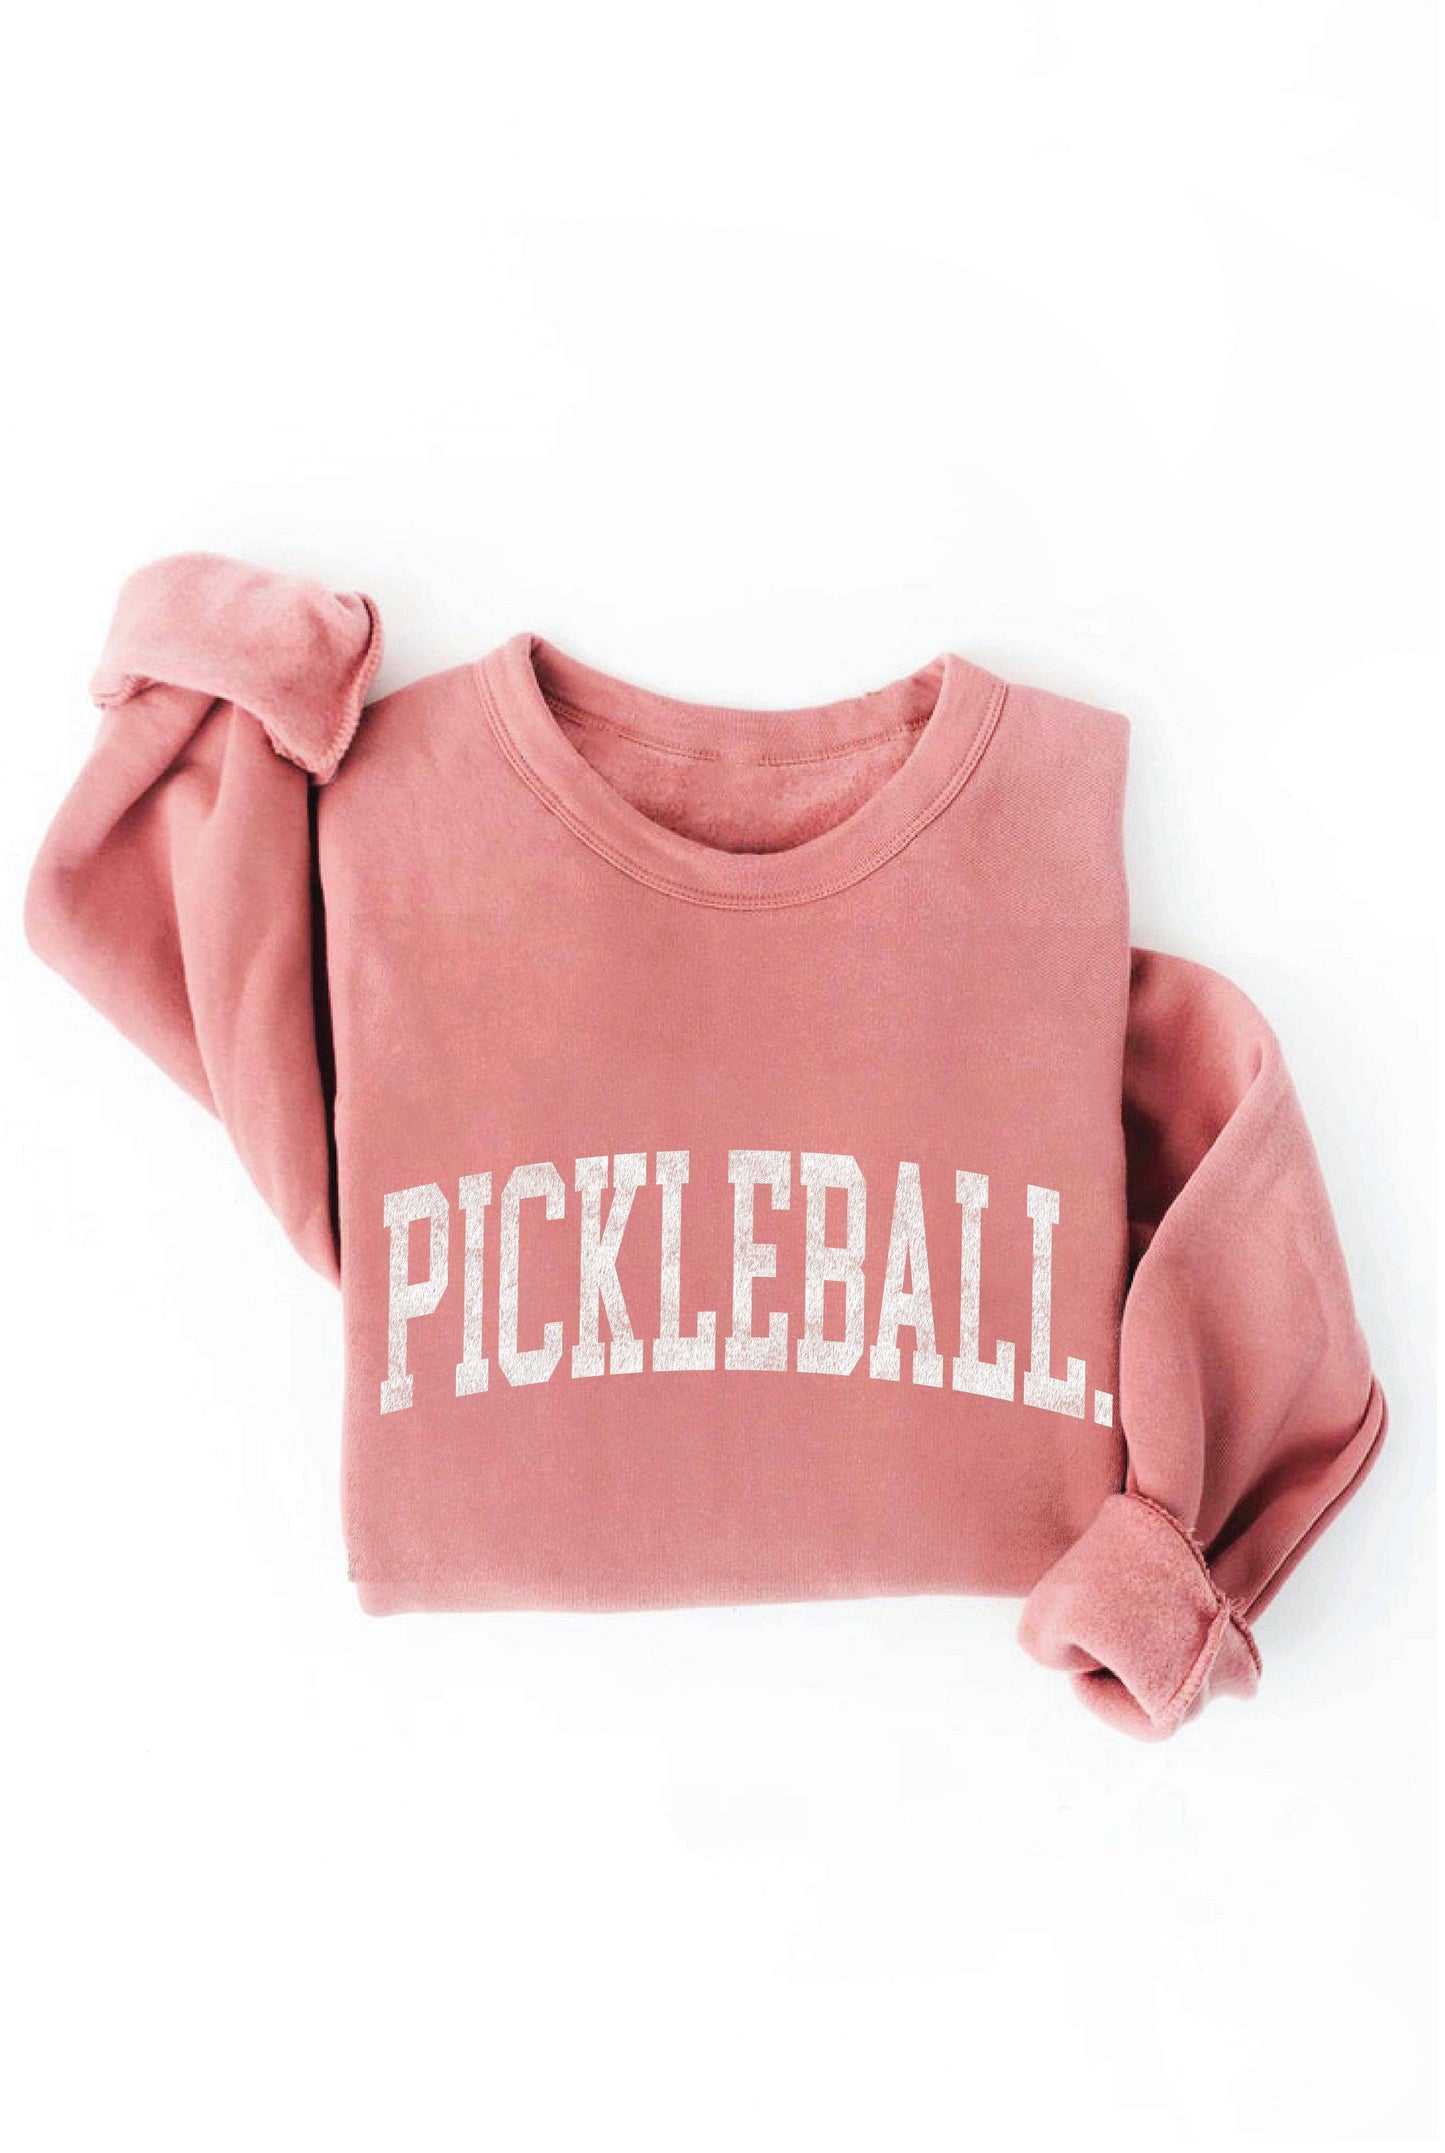 PICKLEBALL Graphic Sweatshirt